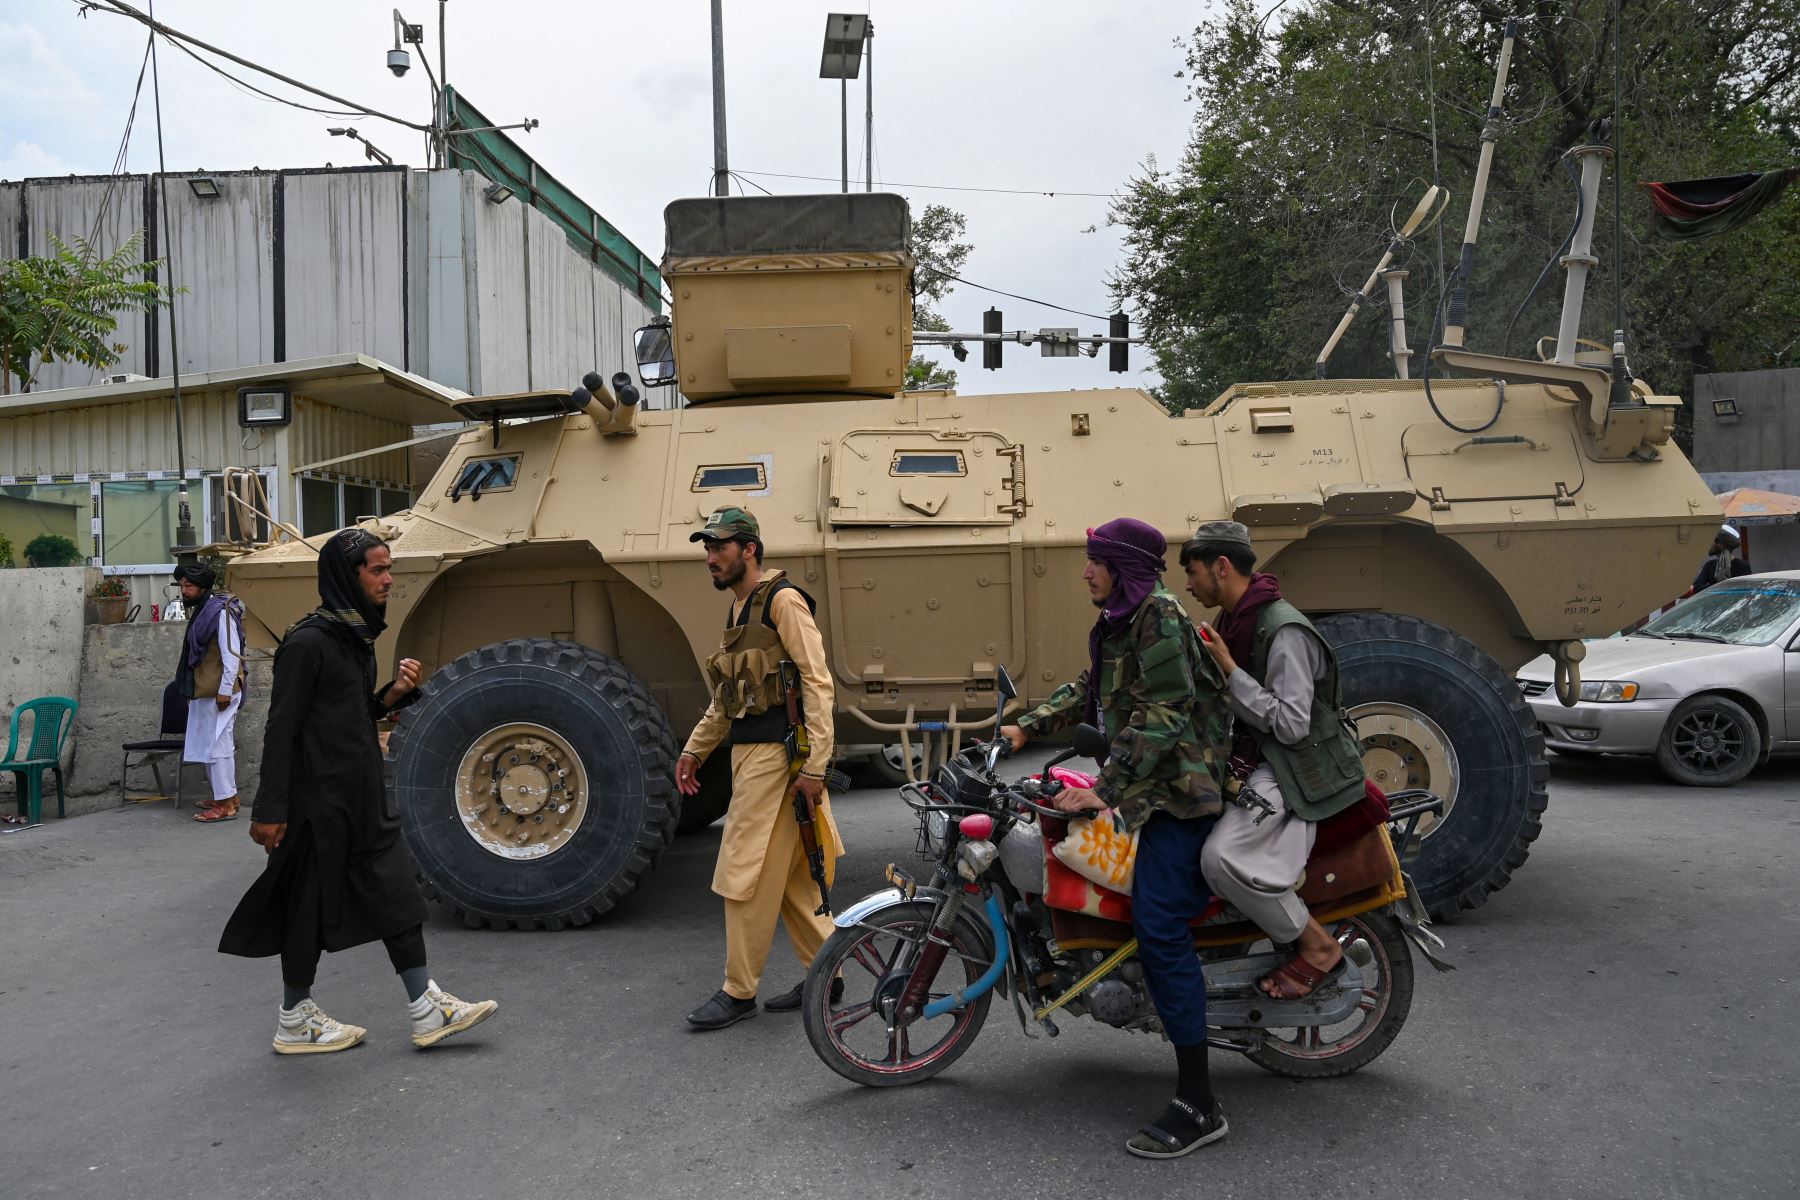 Los combatientes talibanes patrullan a lo largo de una calle en Kabul, cuando los talibanes se movieron para reiniciar rápidamente la capital afgana luego de su impresionante toma de control de Kabul y le dijeron al personal del gobierno que regresara al trabajo.

Foto: AFP